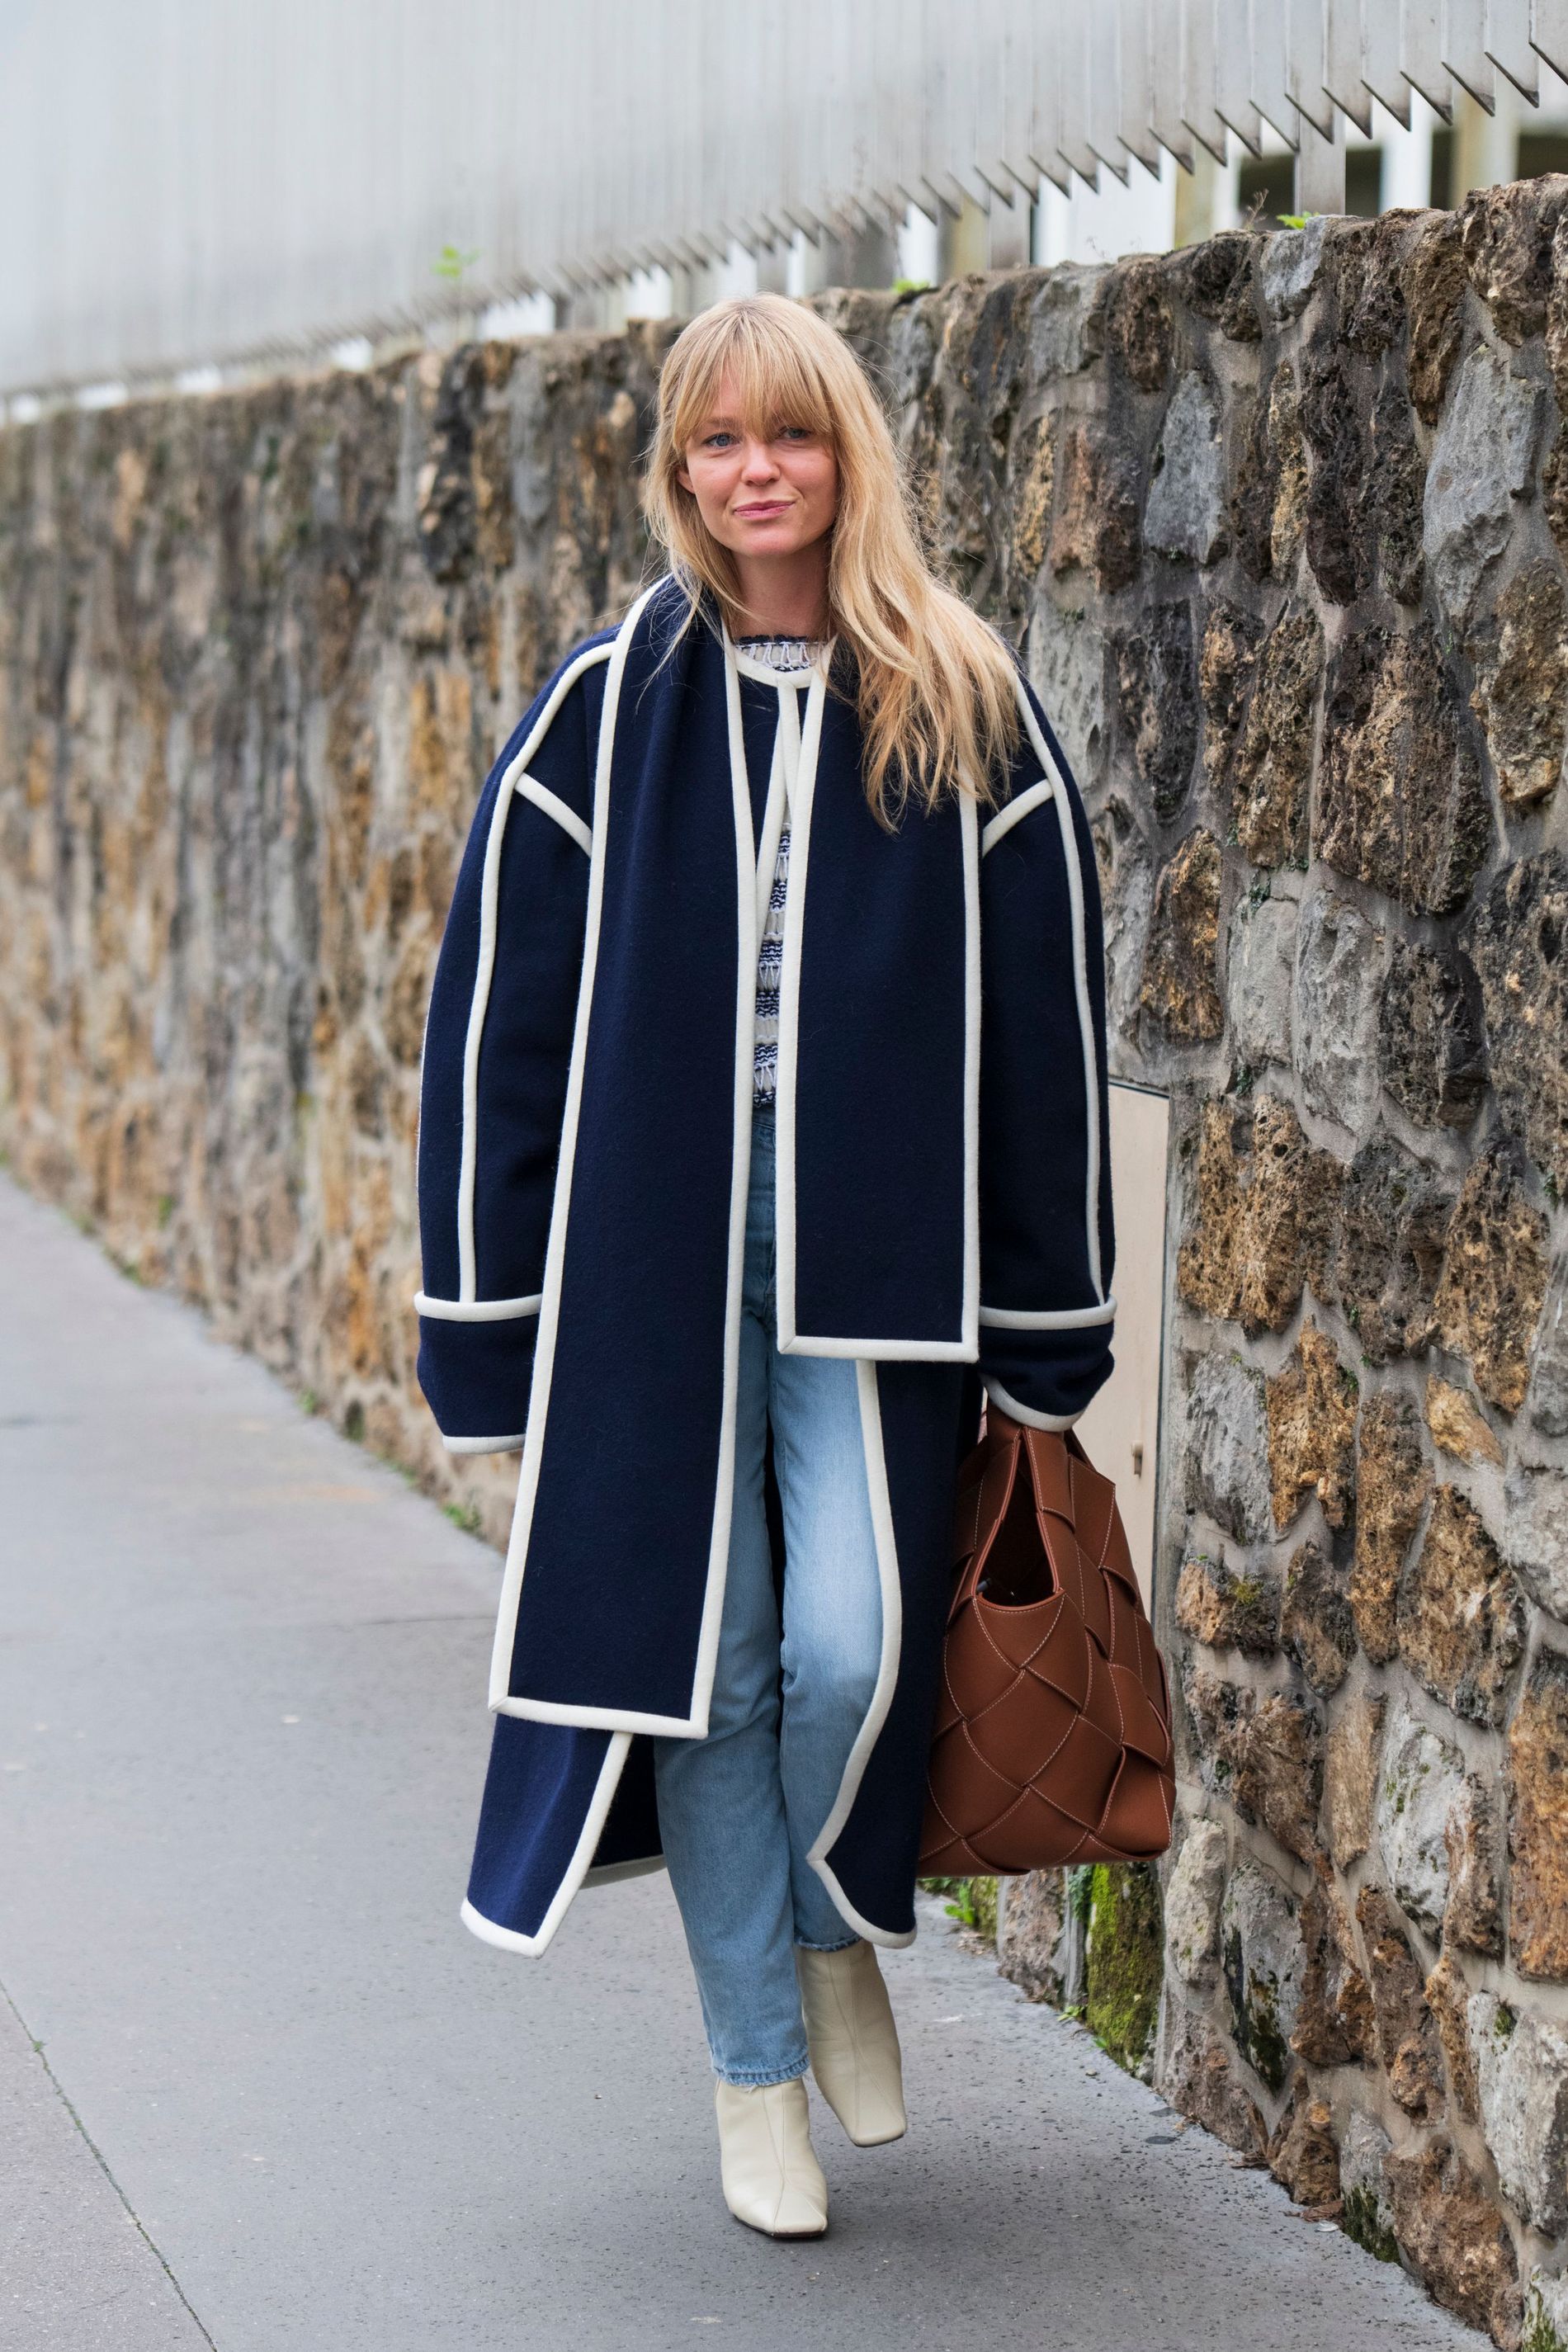 Jeannette Madsen wearing Manu Atelier boots in Paris.